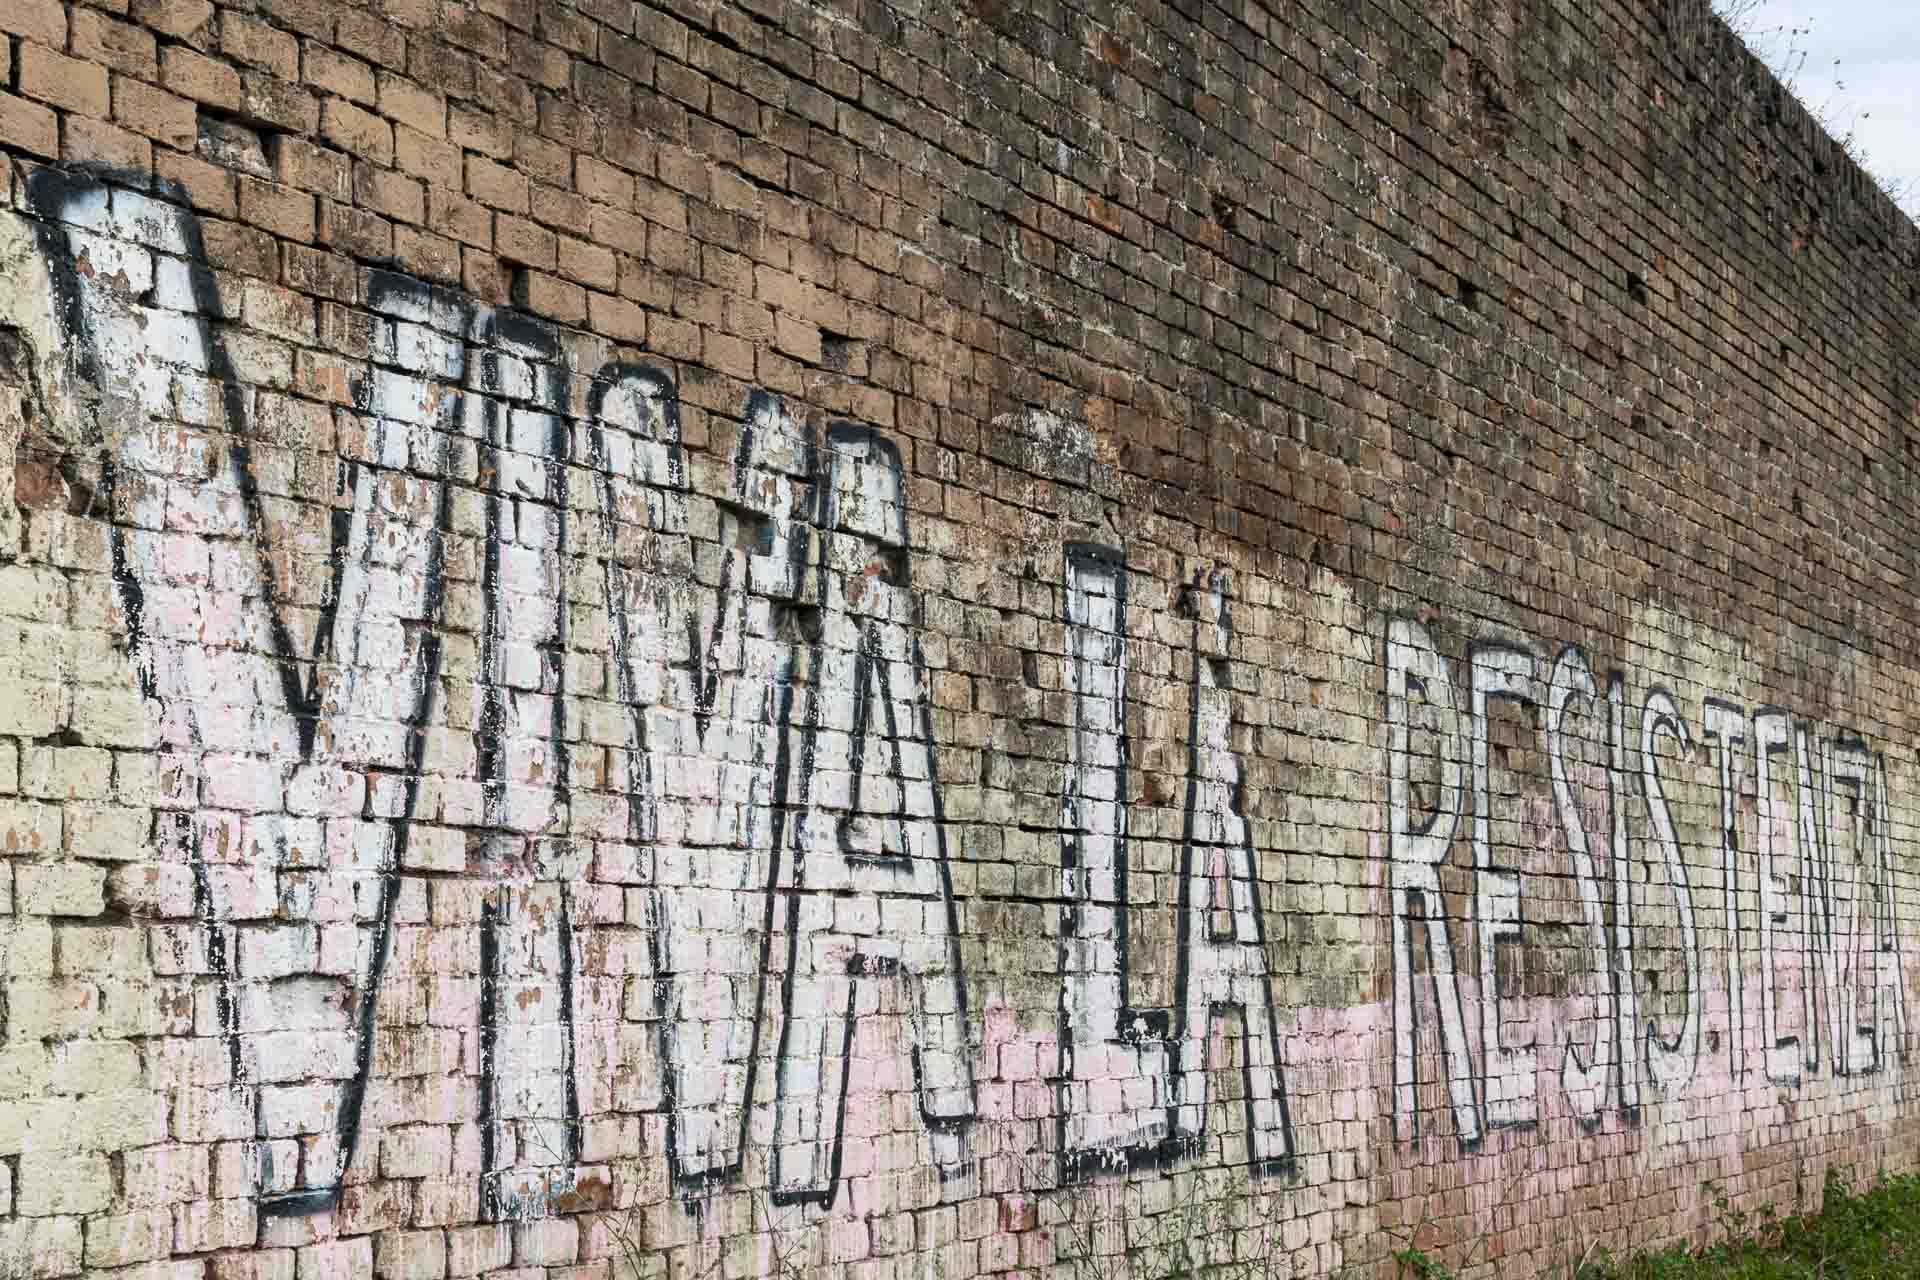 A wall with grafitti written Viva La Resistenza